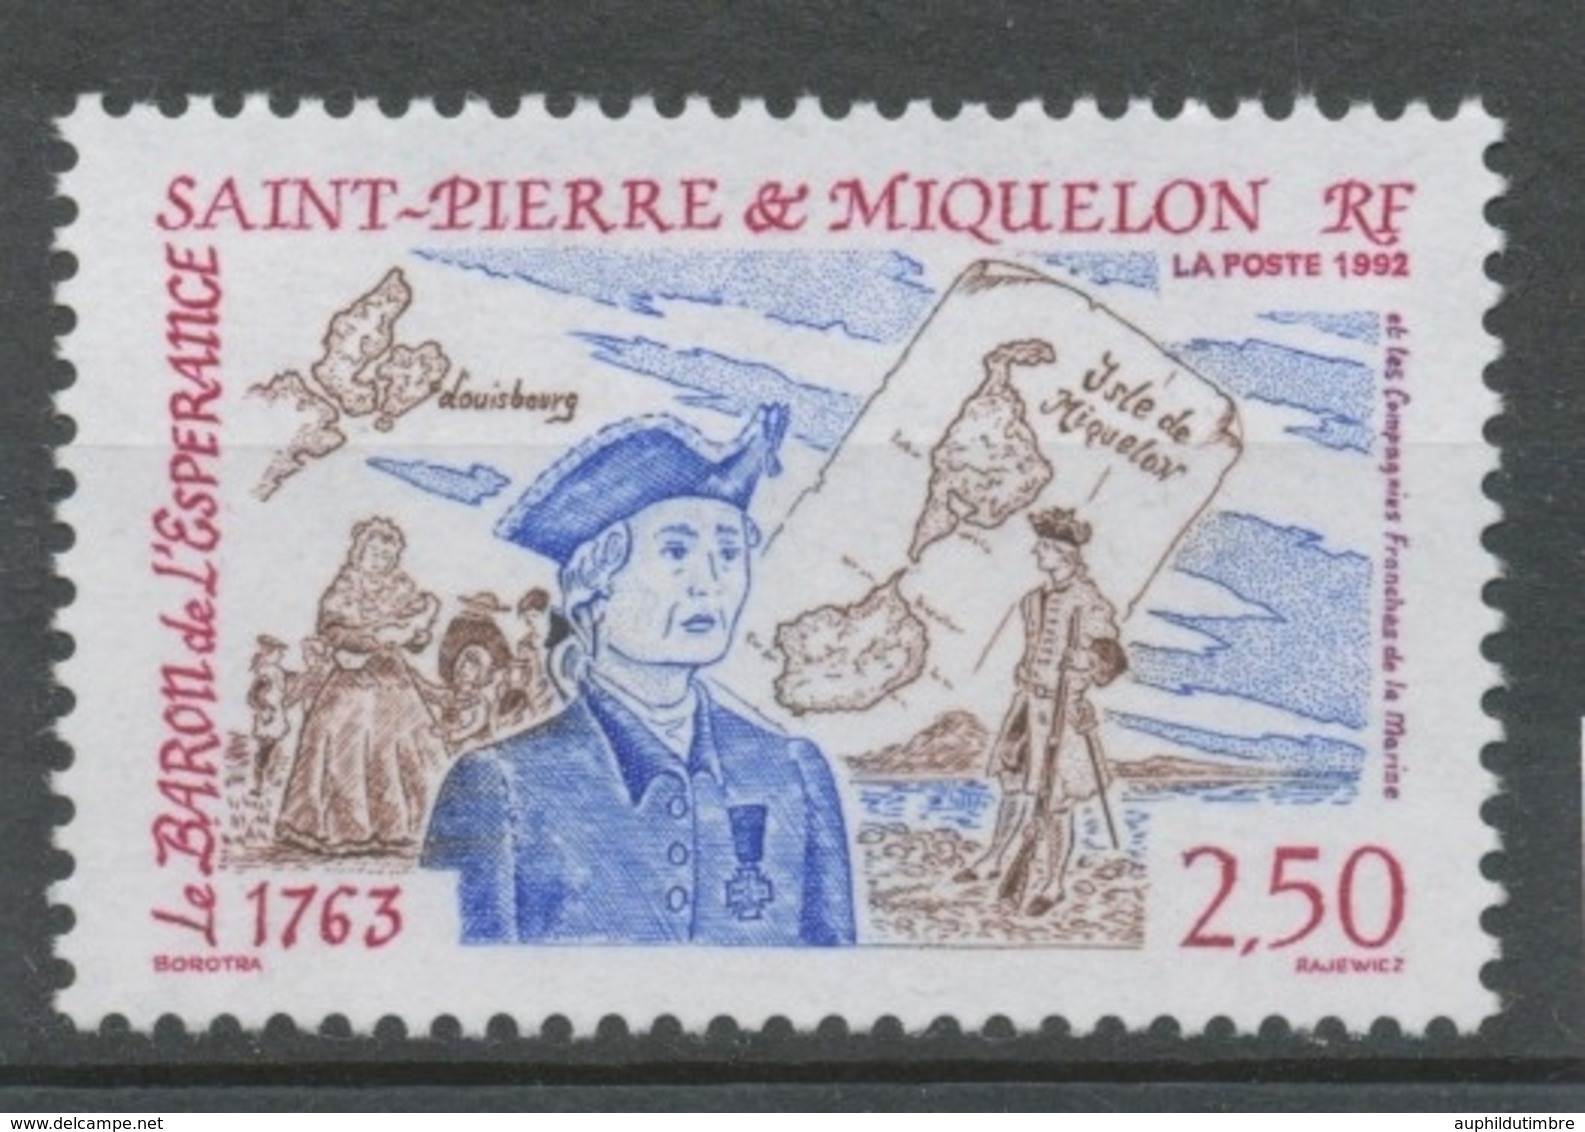 SPM  N°570 Le Baron De L' Espérance, Les Compagnies Franches De La Marine Cartes, Personnages De 1763 2f50 ZC570 - Nuovi